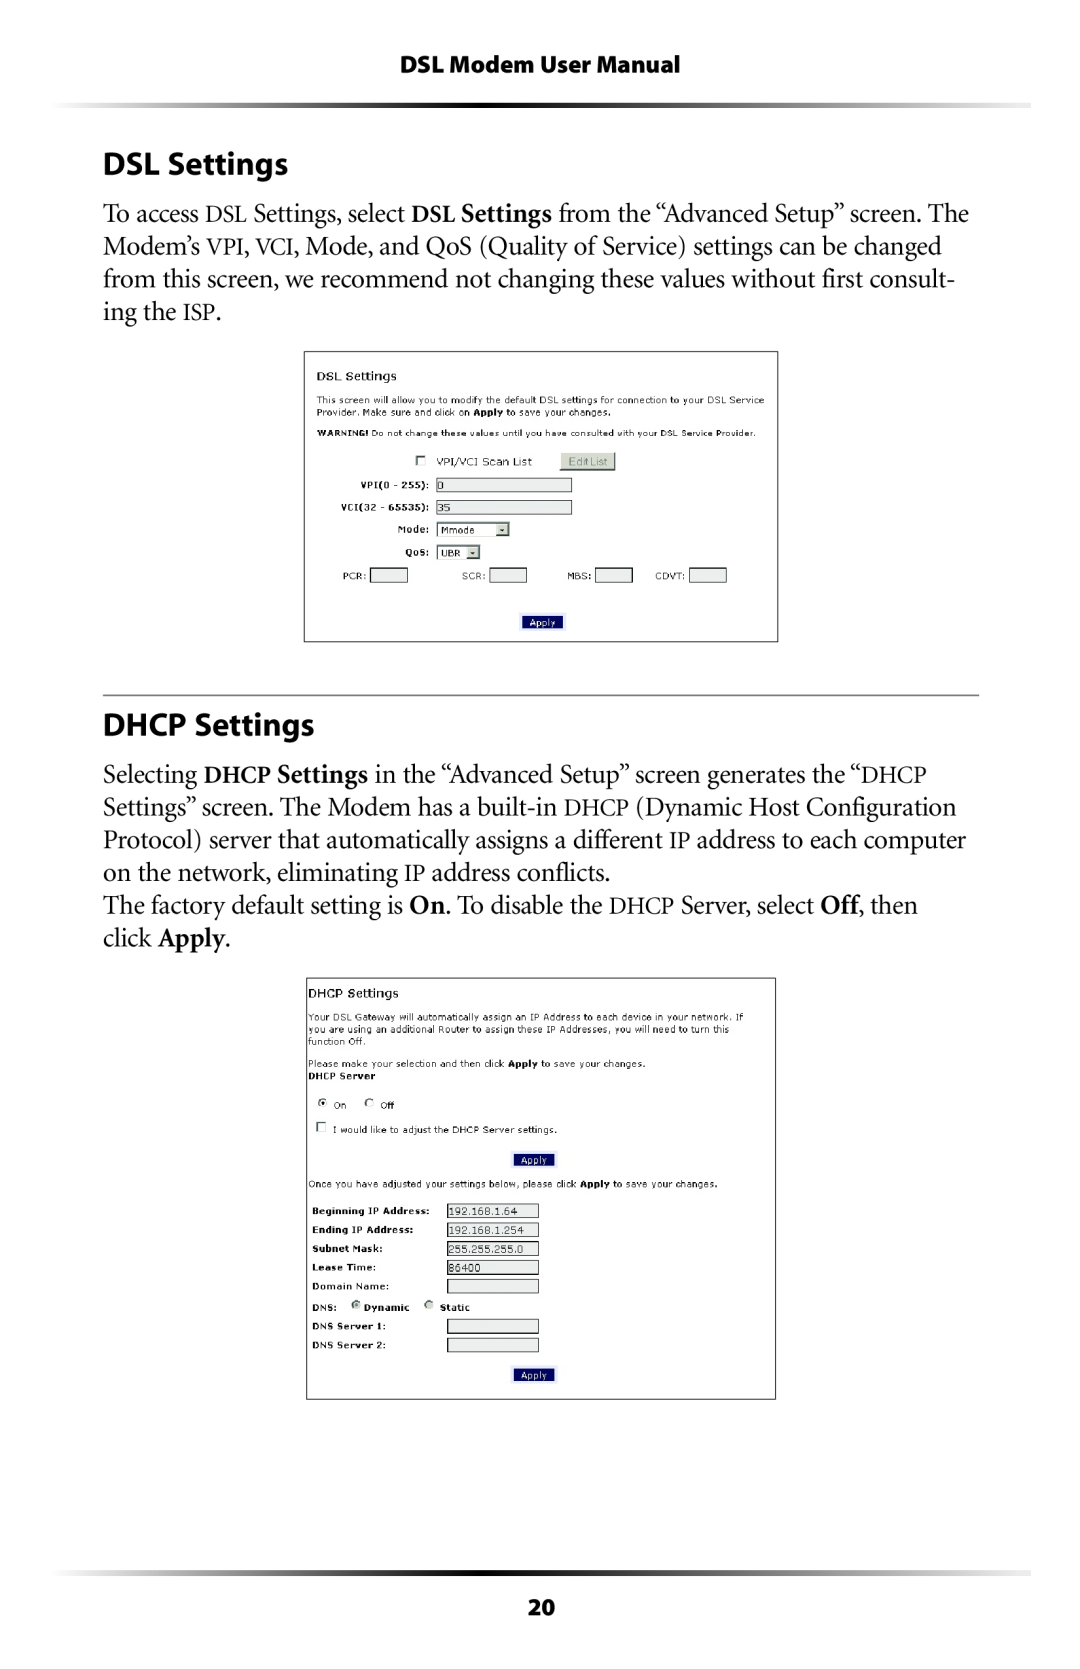 Verizon GT701C user manual DSL Settings, DHCP Settings 